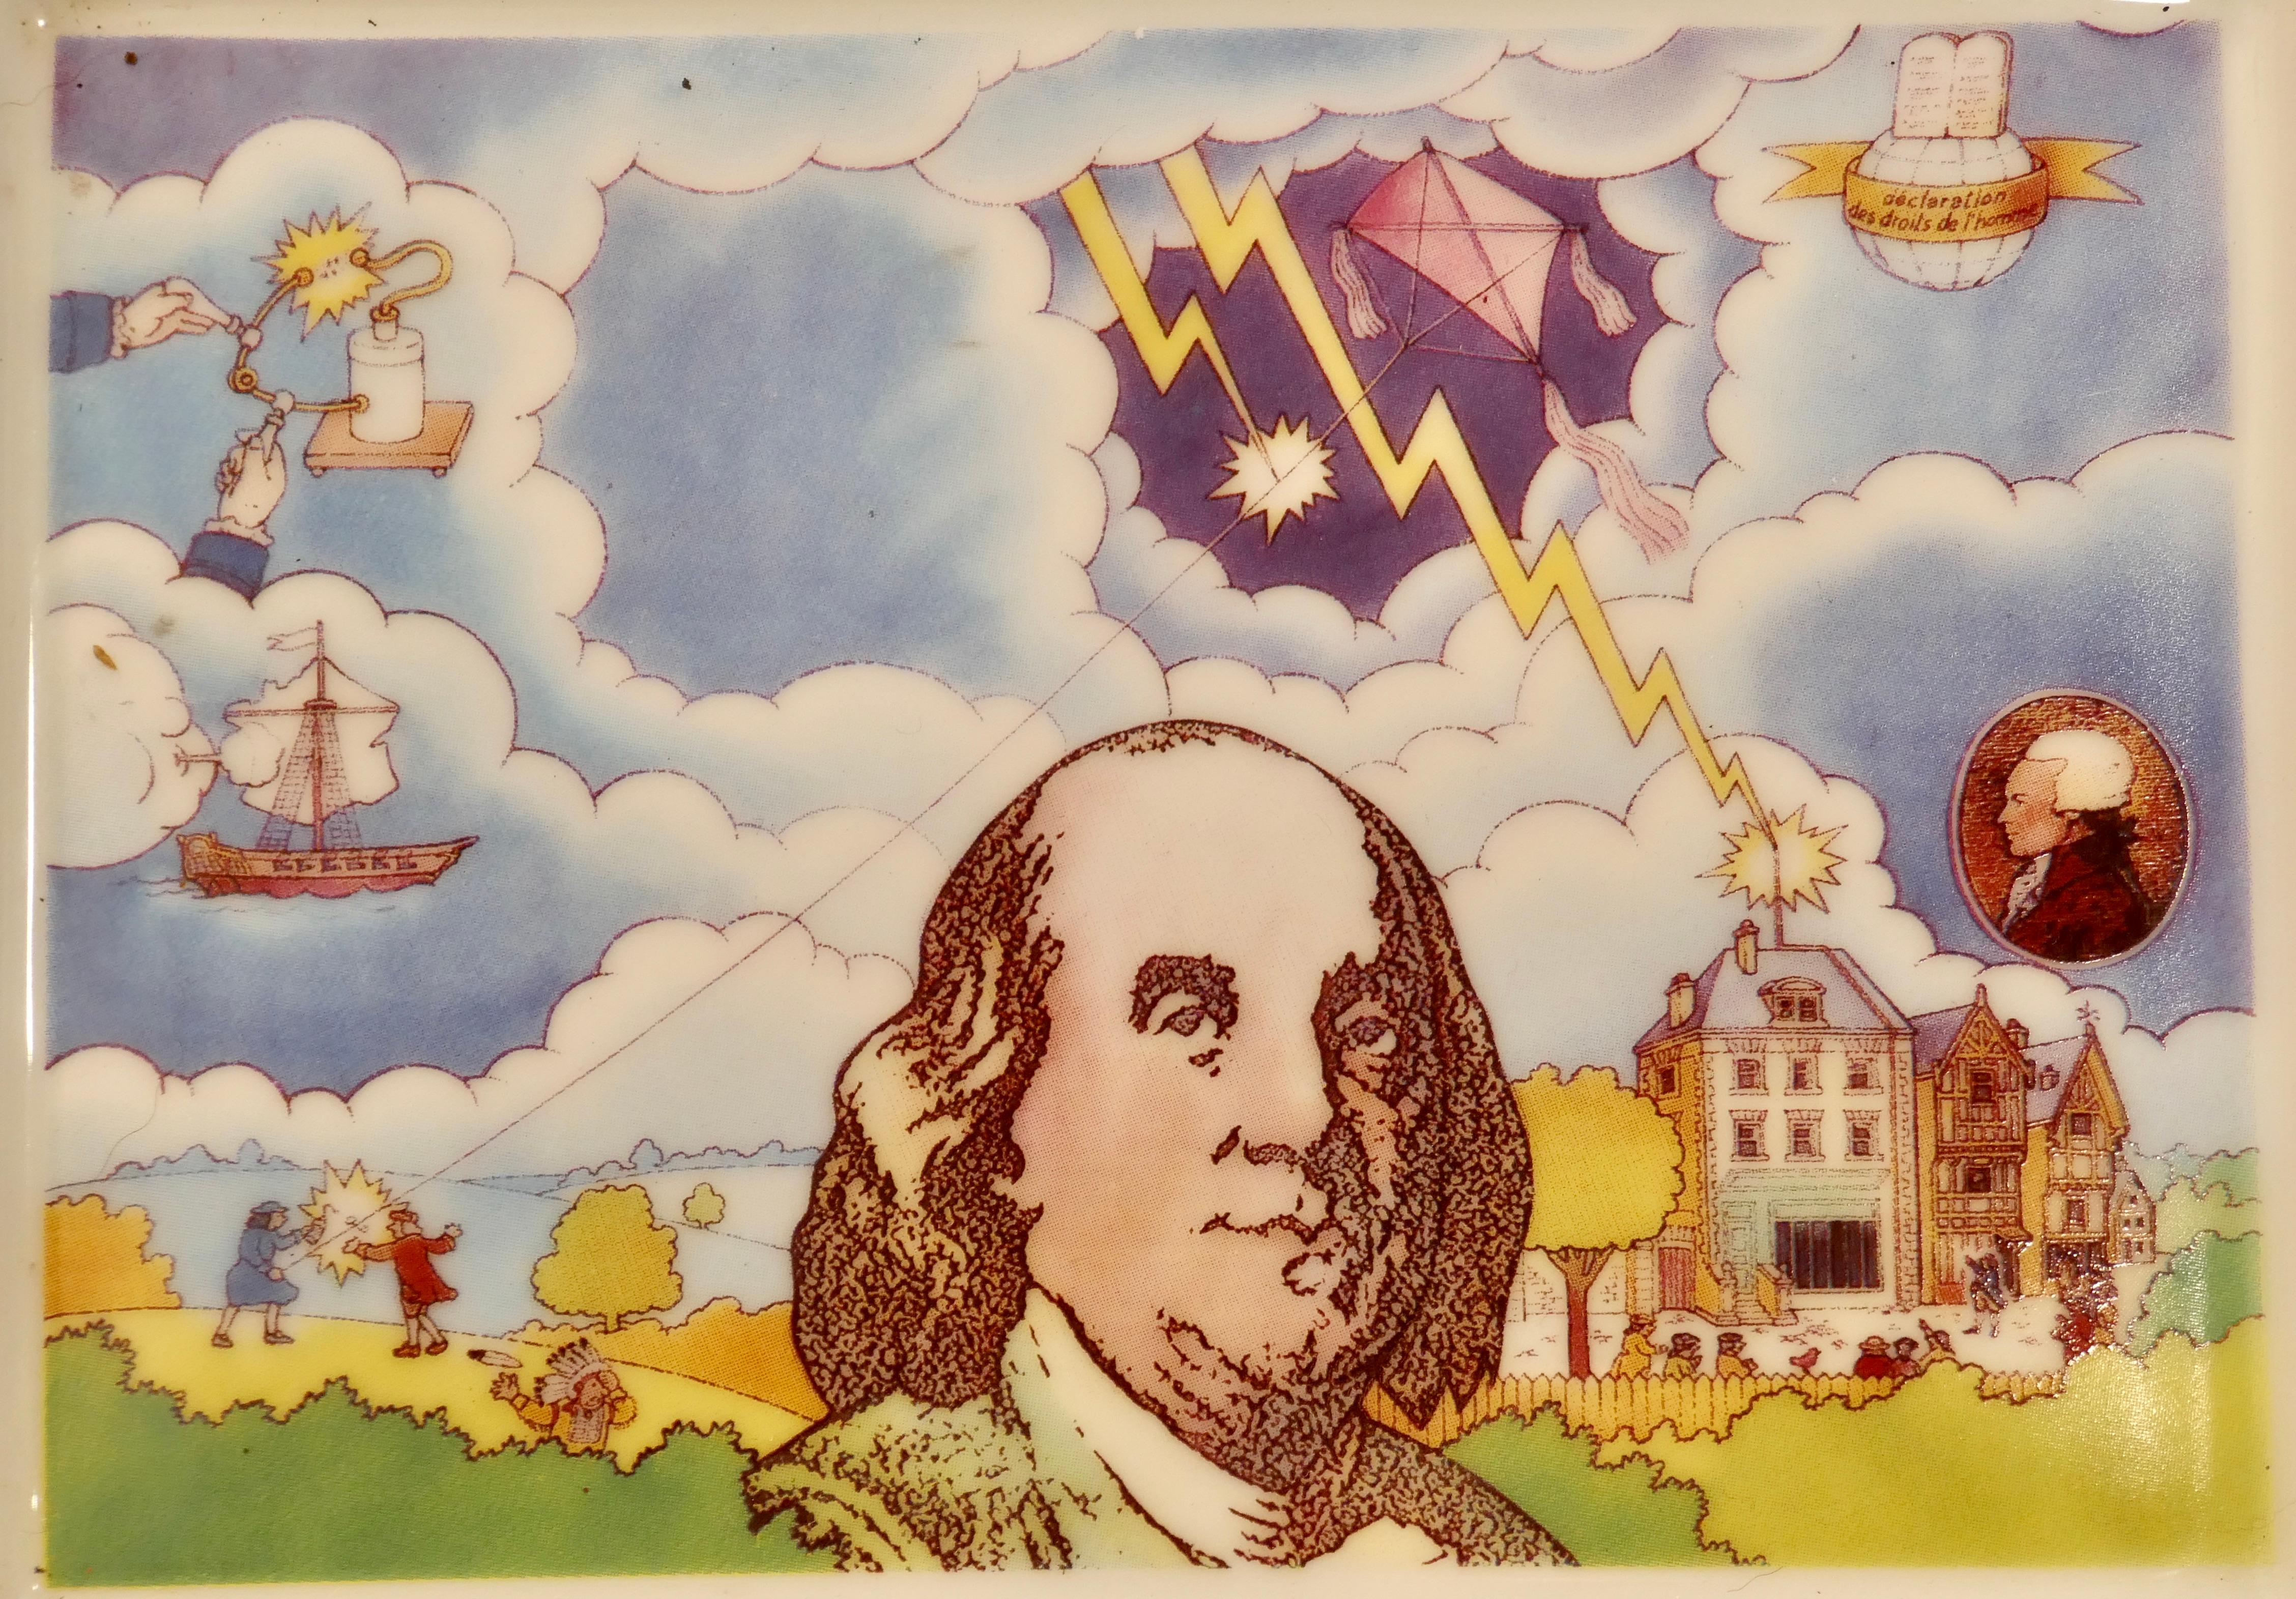 Plat polychrome commémorant la découverte de l'électricité par Benjamin Franklin par L De Boynes


Benjamin Franklin, l'un des pères fondateurs des États-Unis et un très brillant scientifique
En 1752, il réalise sa célèbre expérience du